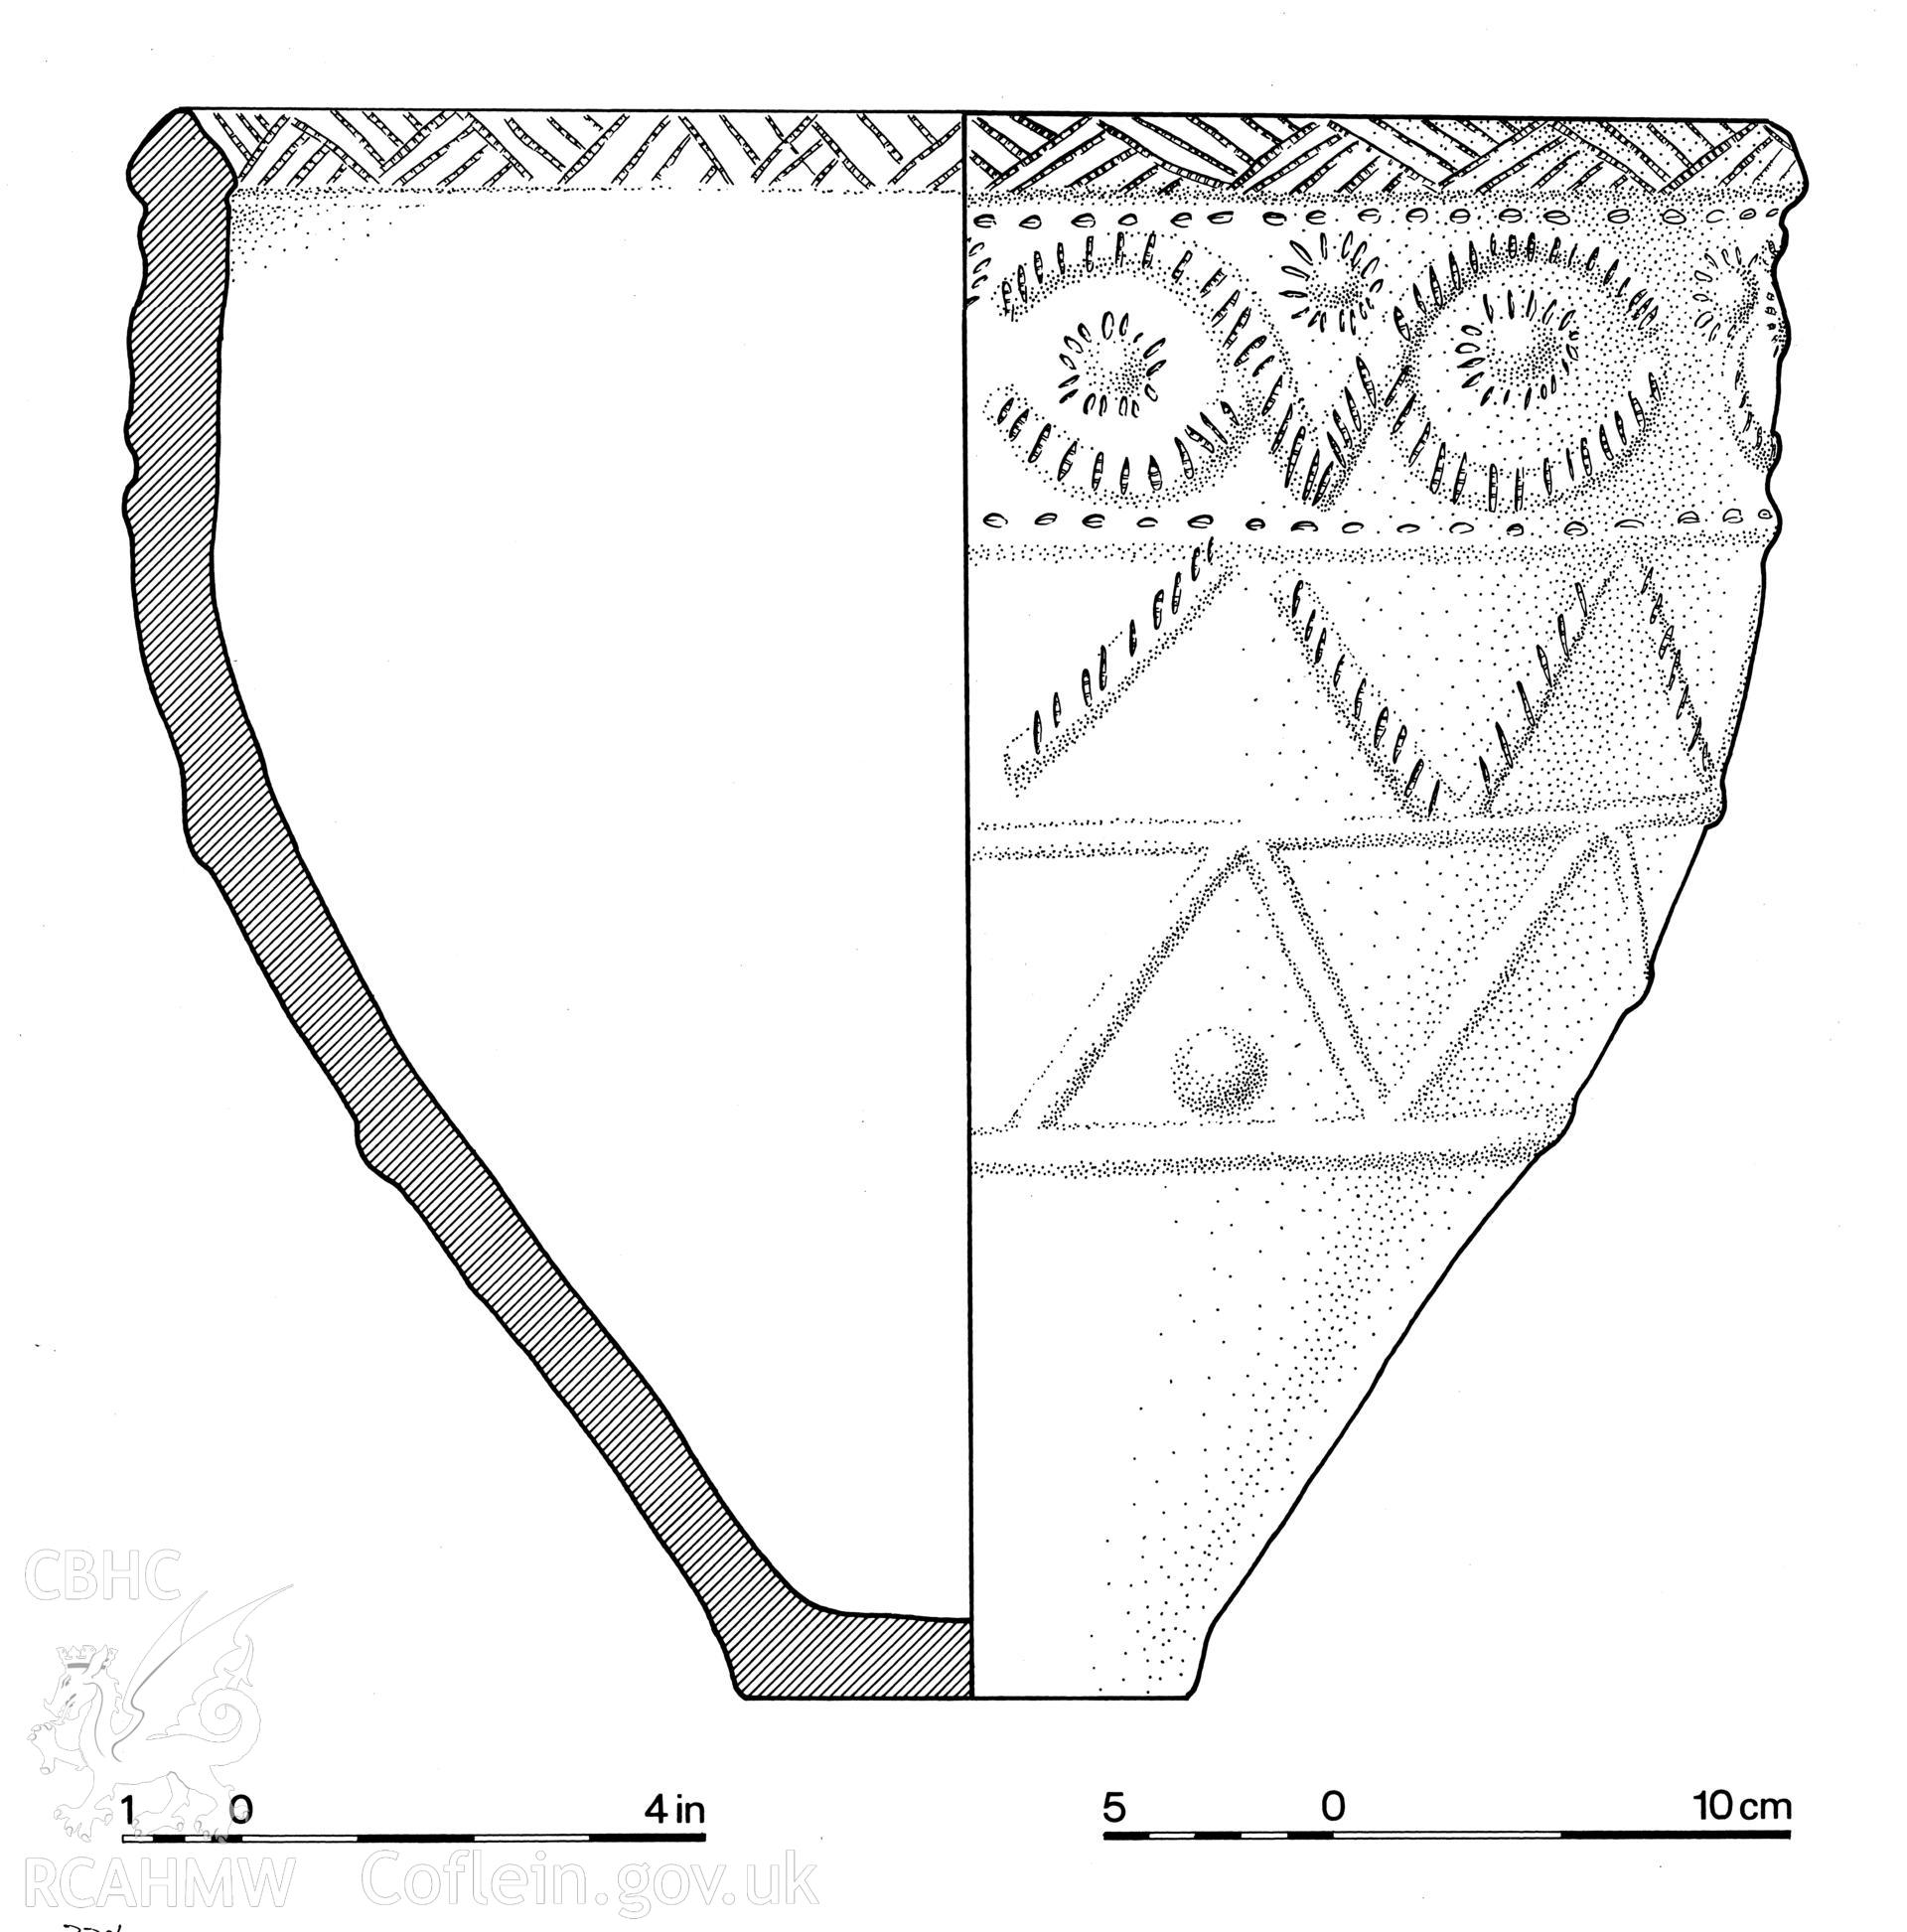 Volume 1, Figure 22: 'The Penllwyn urn'.